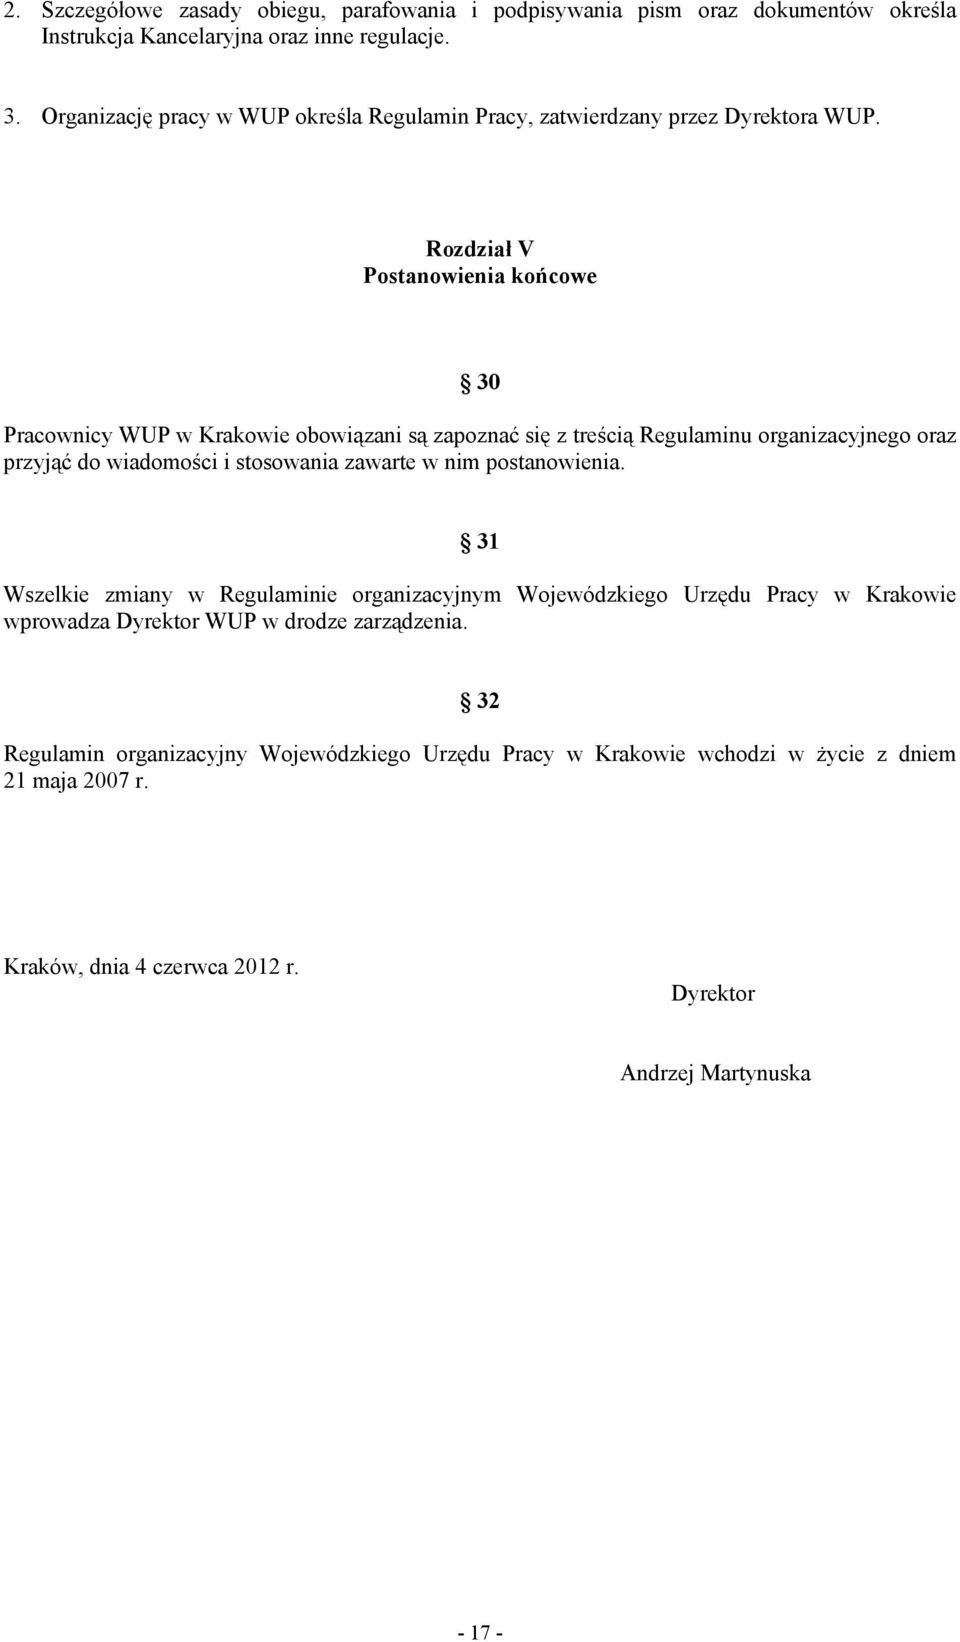 Rozdział V Postanowienia końcowe 30 Pracownicy WUP w Krakowie obowiązani są zapoznać się z treścią Regulaminu organizacyjnego oraz przyjąć do wiadomości i stosowania zawarte w